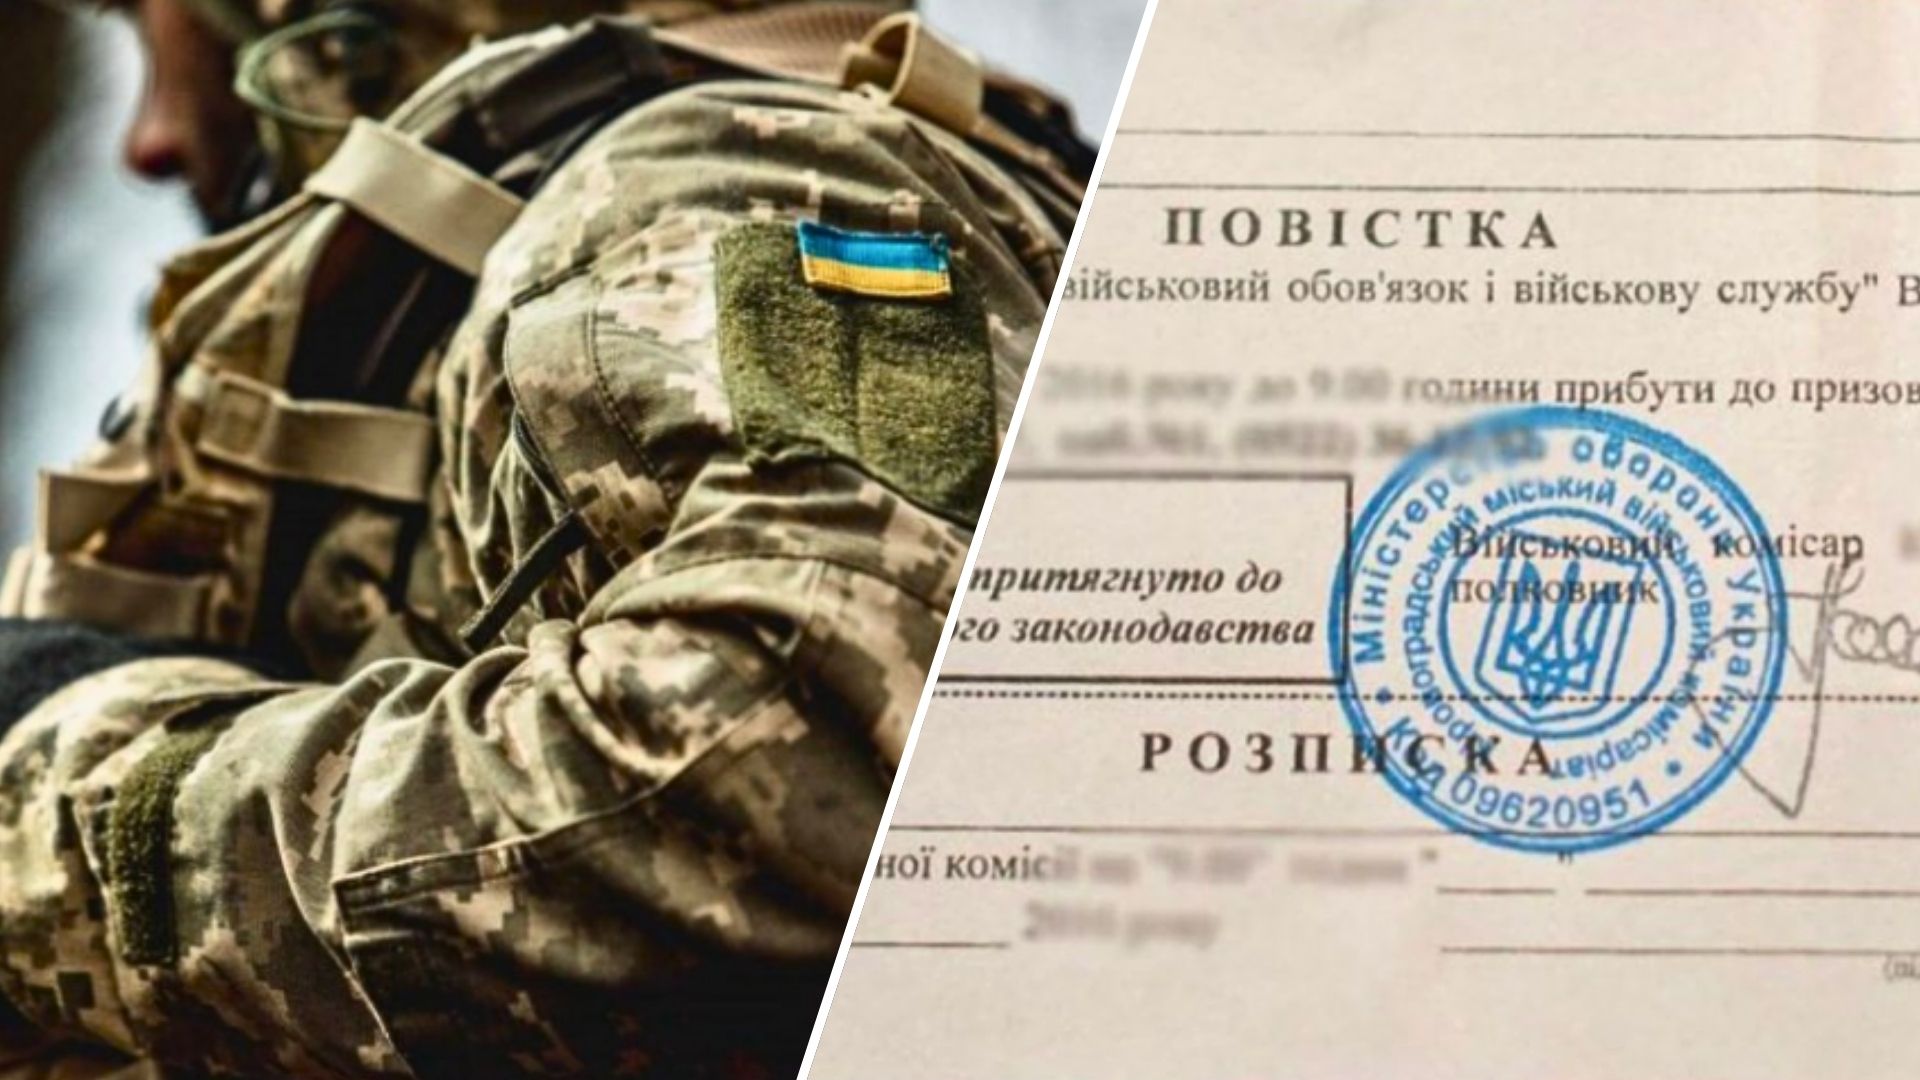 В Україні загальна мобілізація та воєнний стан тривають від 24 лютого 2022 року. Під мобілізацію підпадають чоловіки від 18 до 60 років.